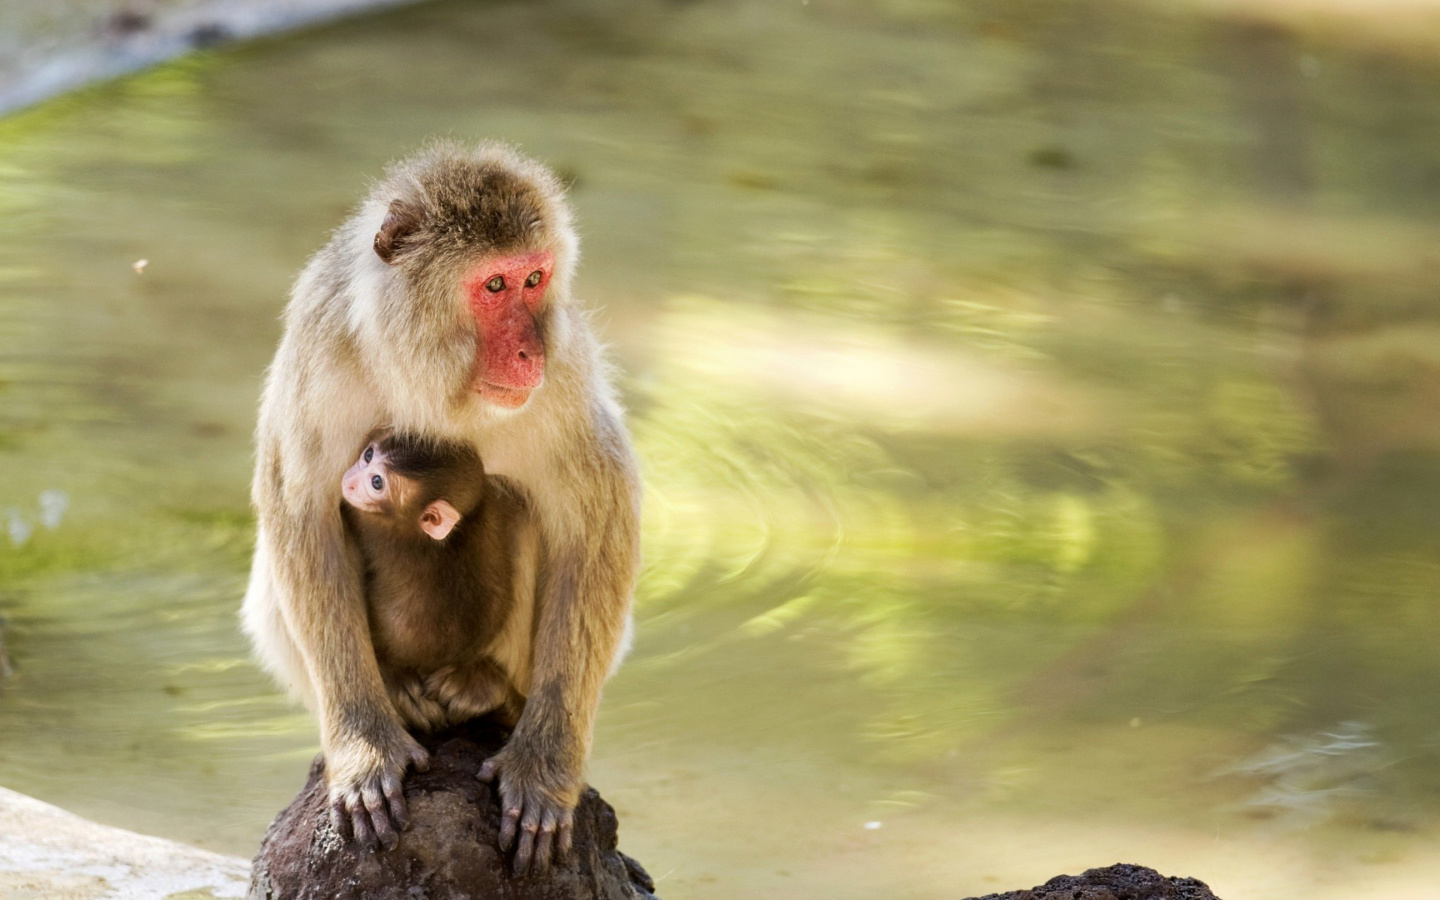 Feeding monkeys in Phuket screenshot #1 1440x900